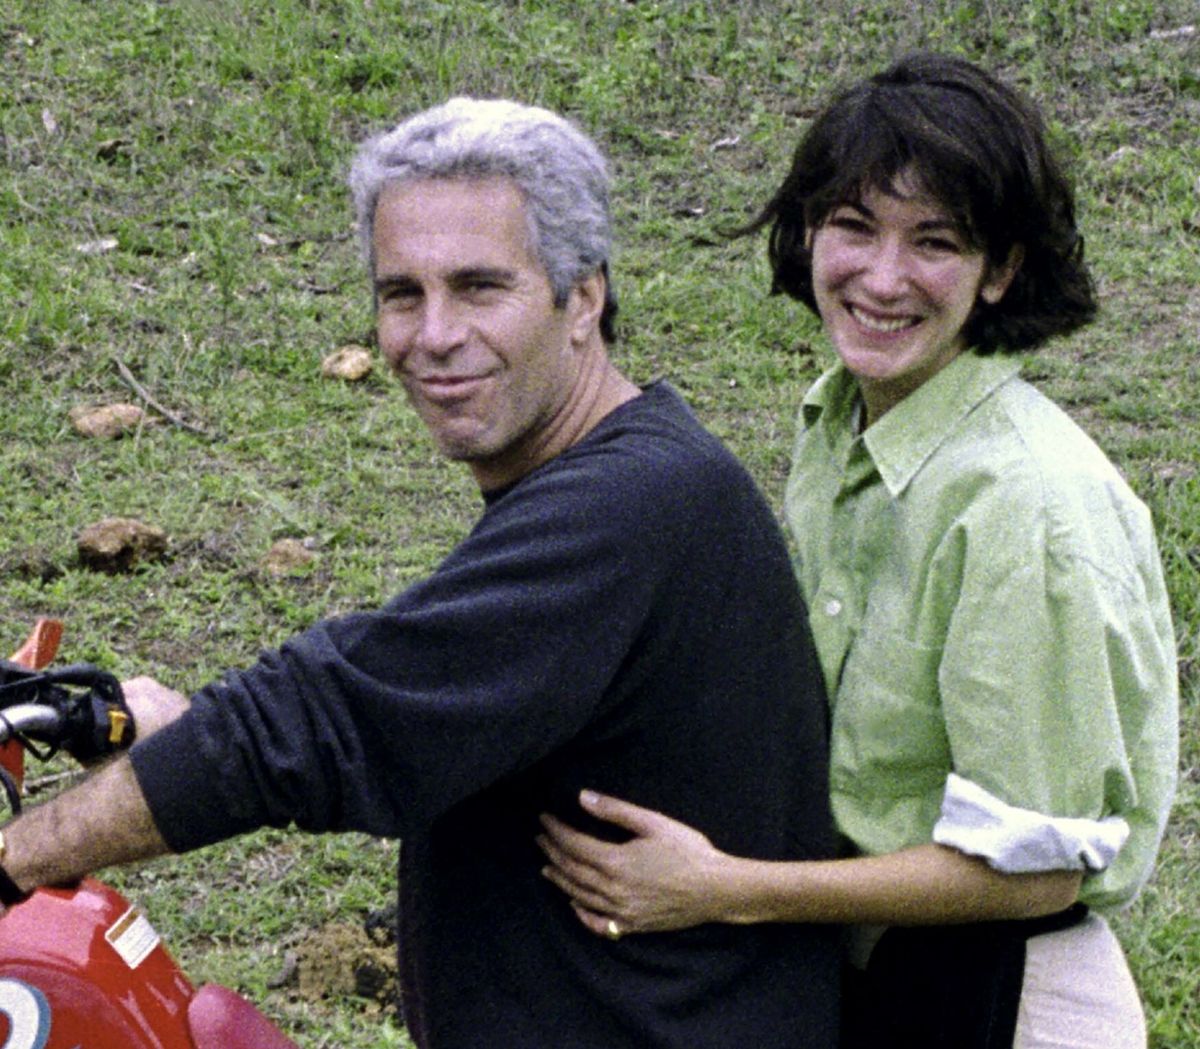 Ujawniono tzw. listę Epsteina. Kto się na niej znalazł? Na zdjęciu: Jeffrey Epstein i jego wspólniczka Ghislaine Maxwell